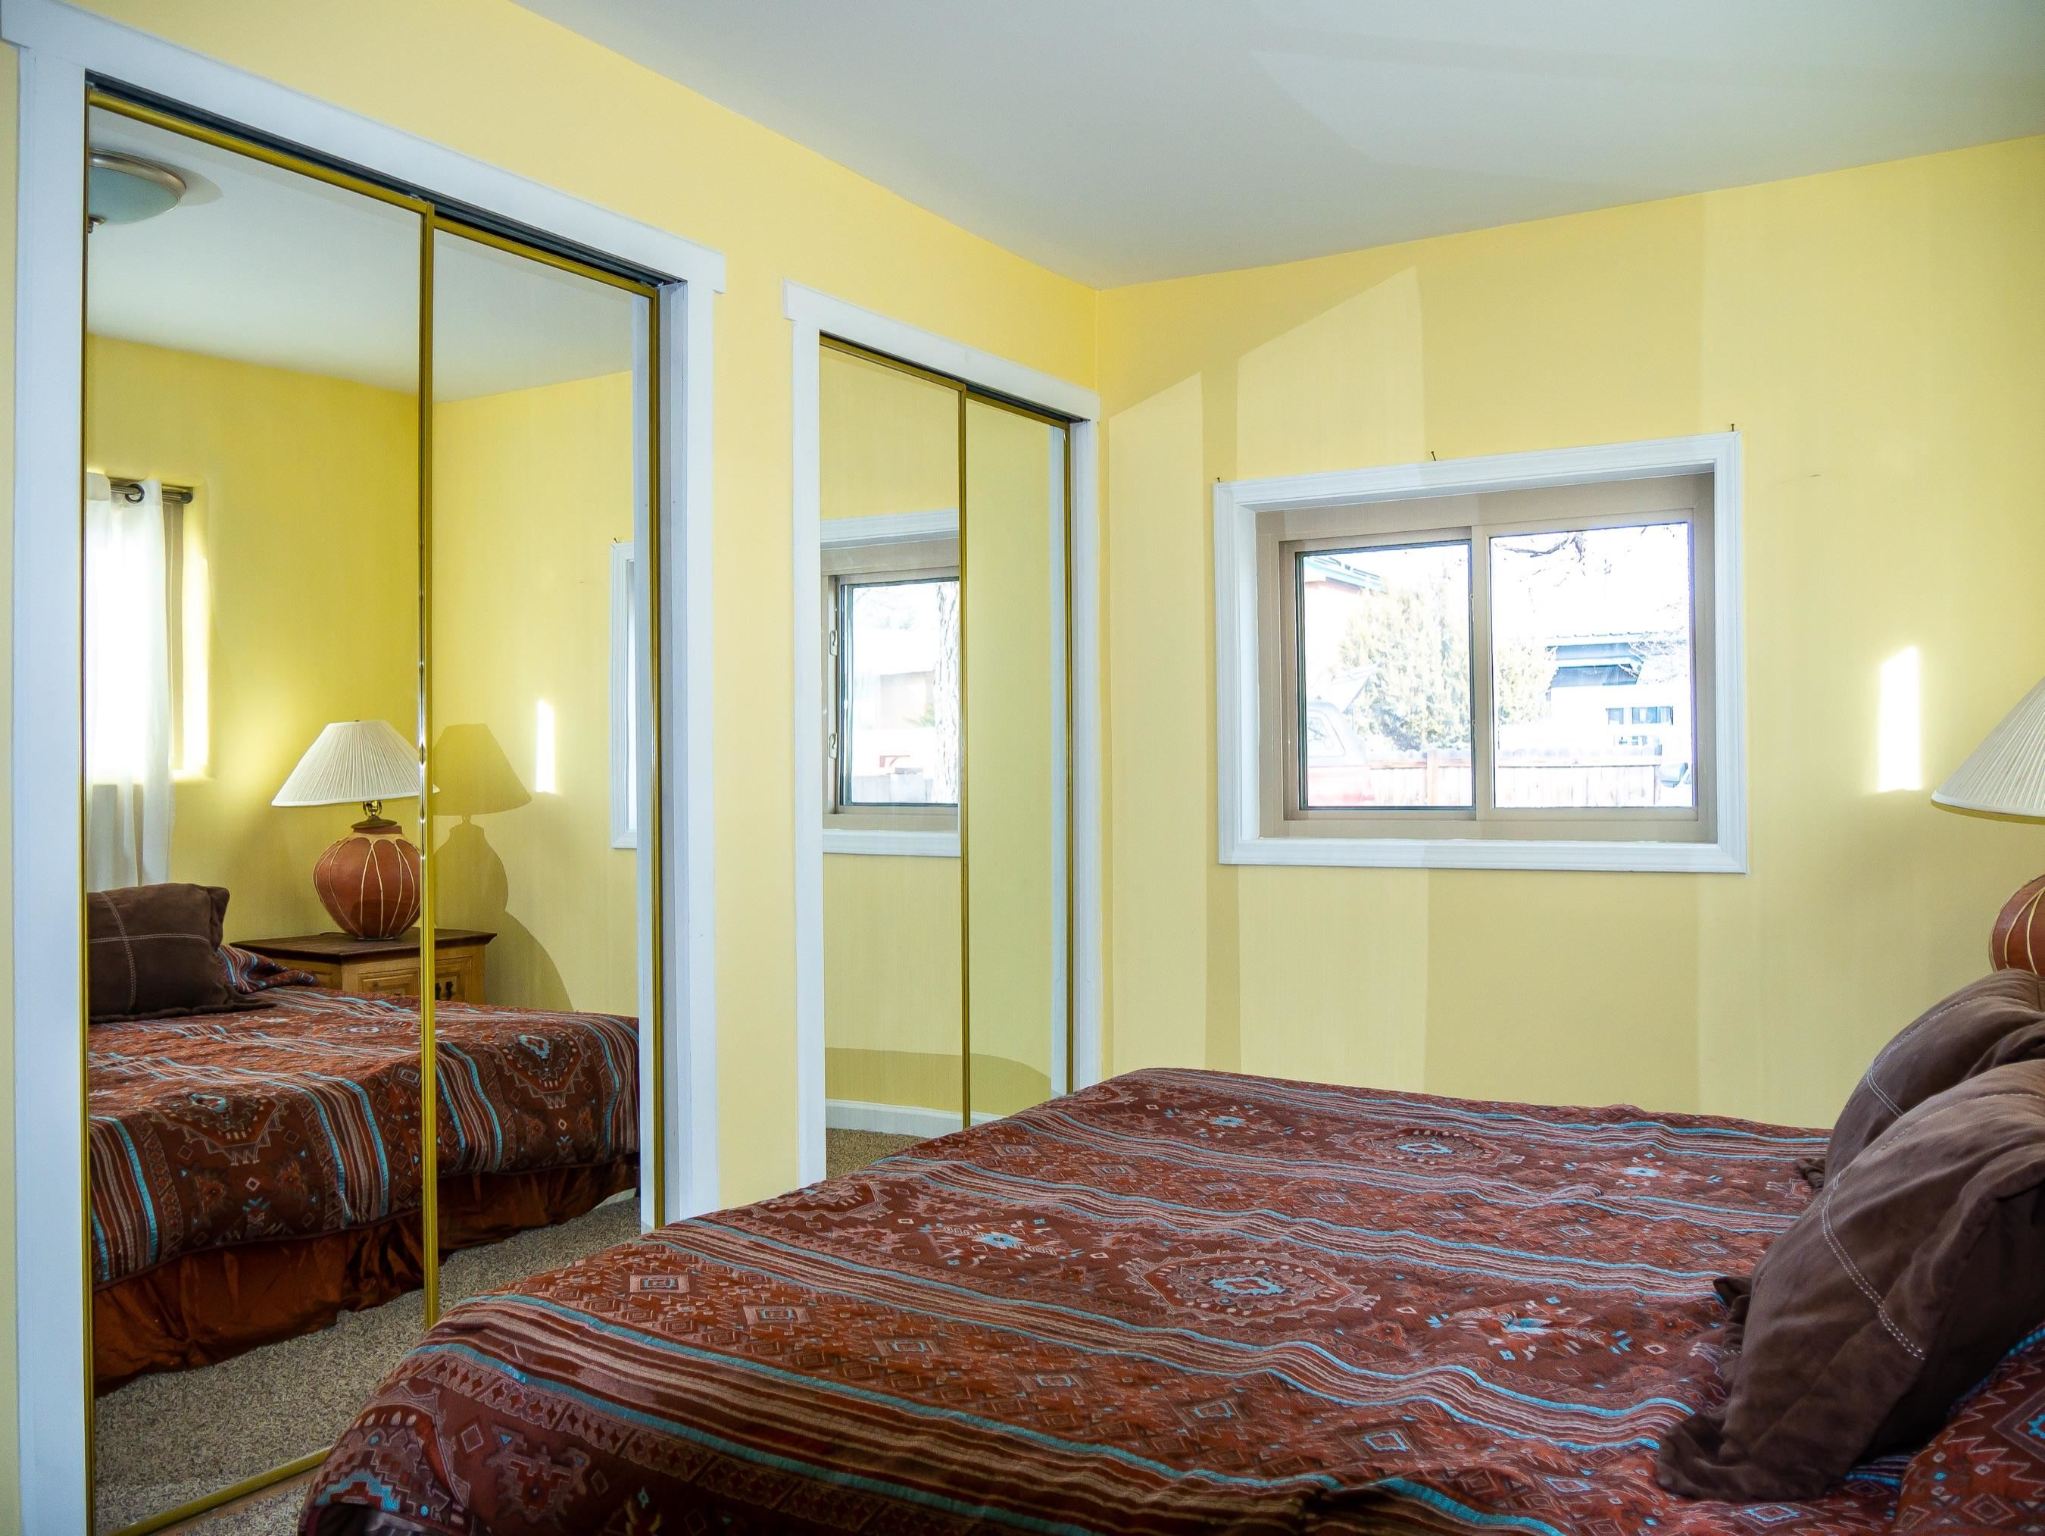 508 Camino Solano, Santa Fe, New Mexico 87505, 3 Bedrooms Bedrooms, ,2 BathroomsBathrooms,Residential,For Sale,508 Camino Solano,202201268